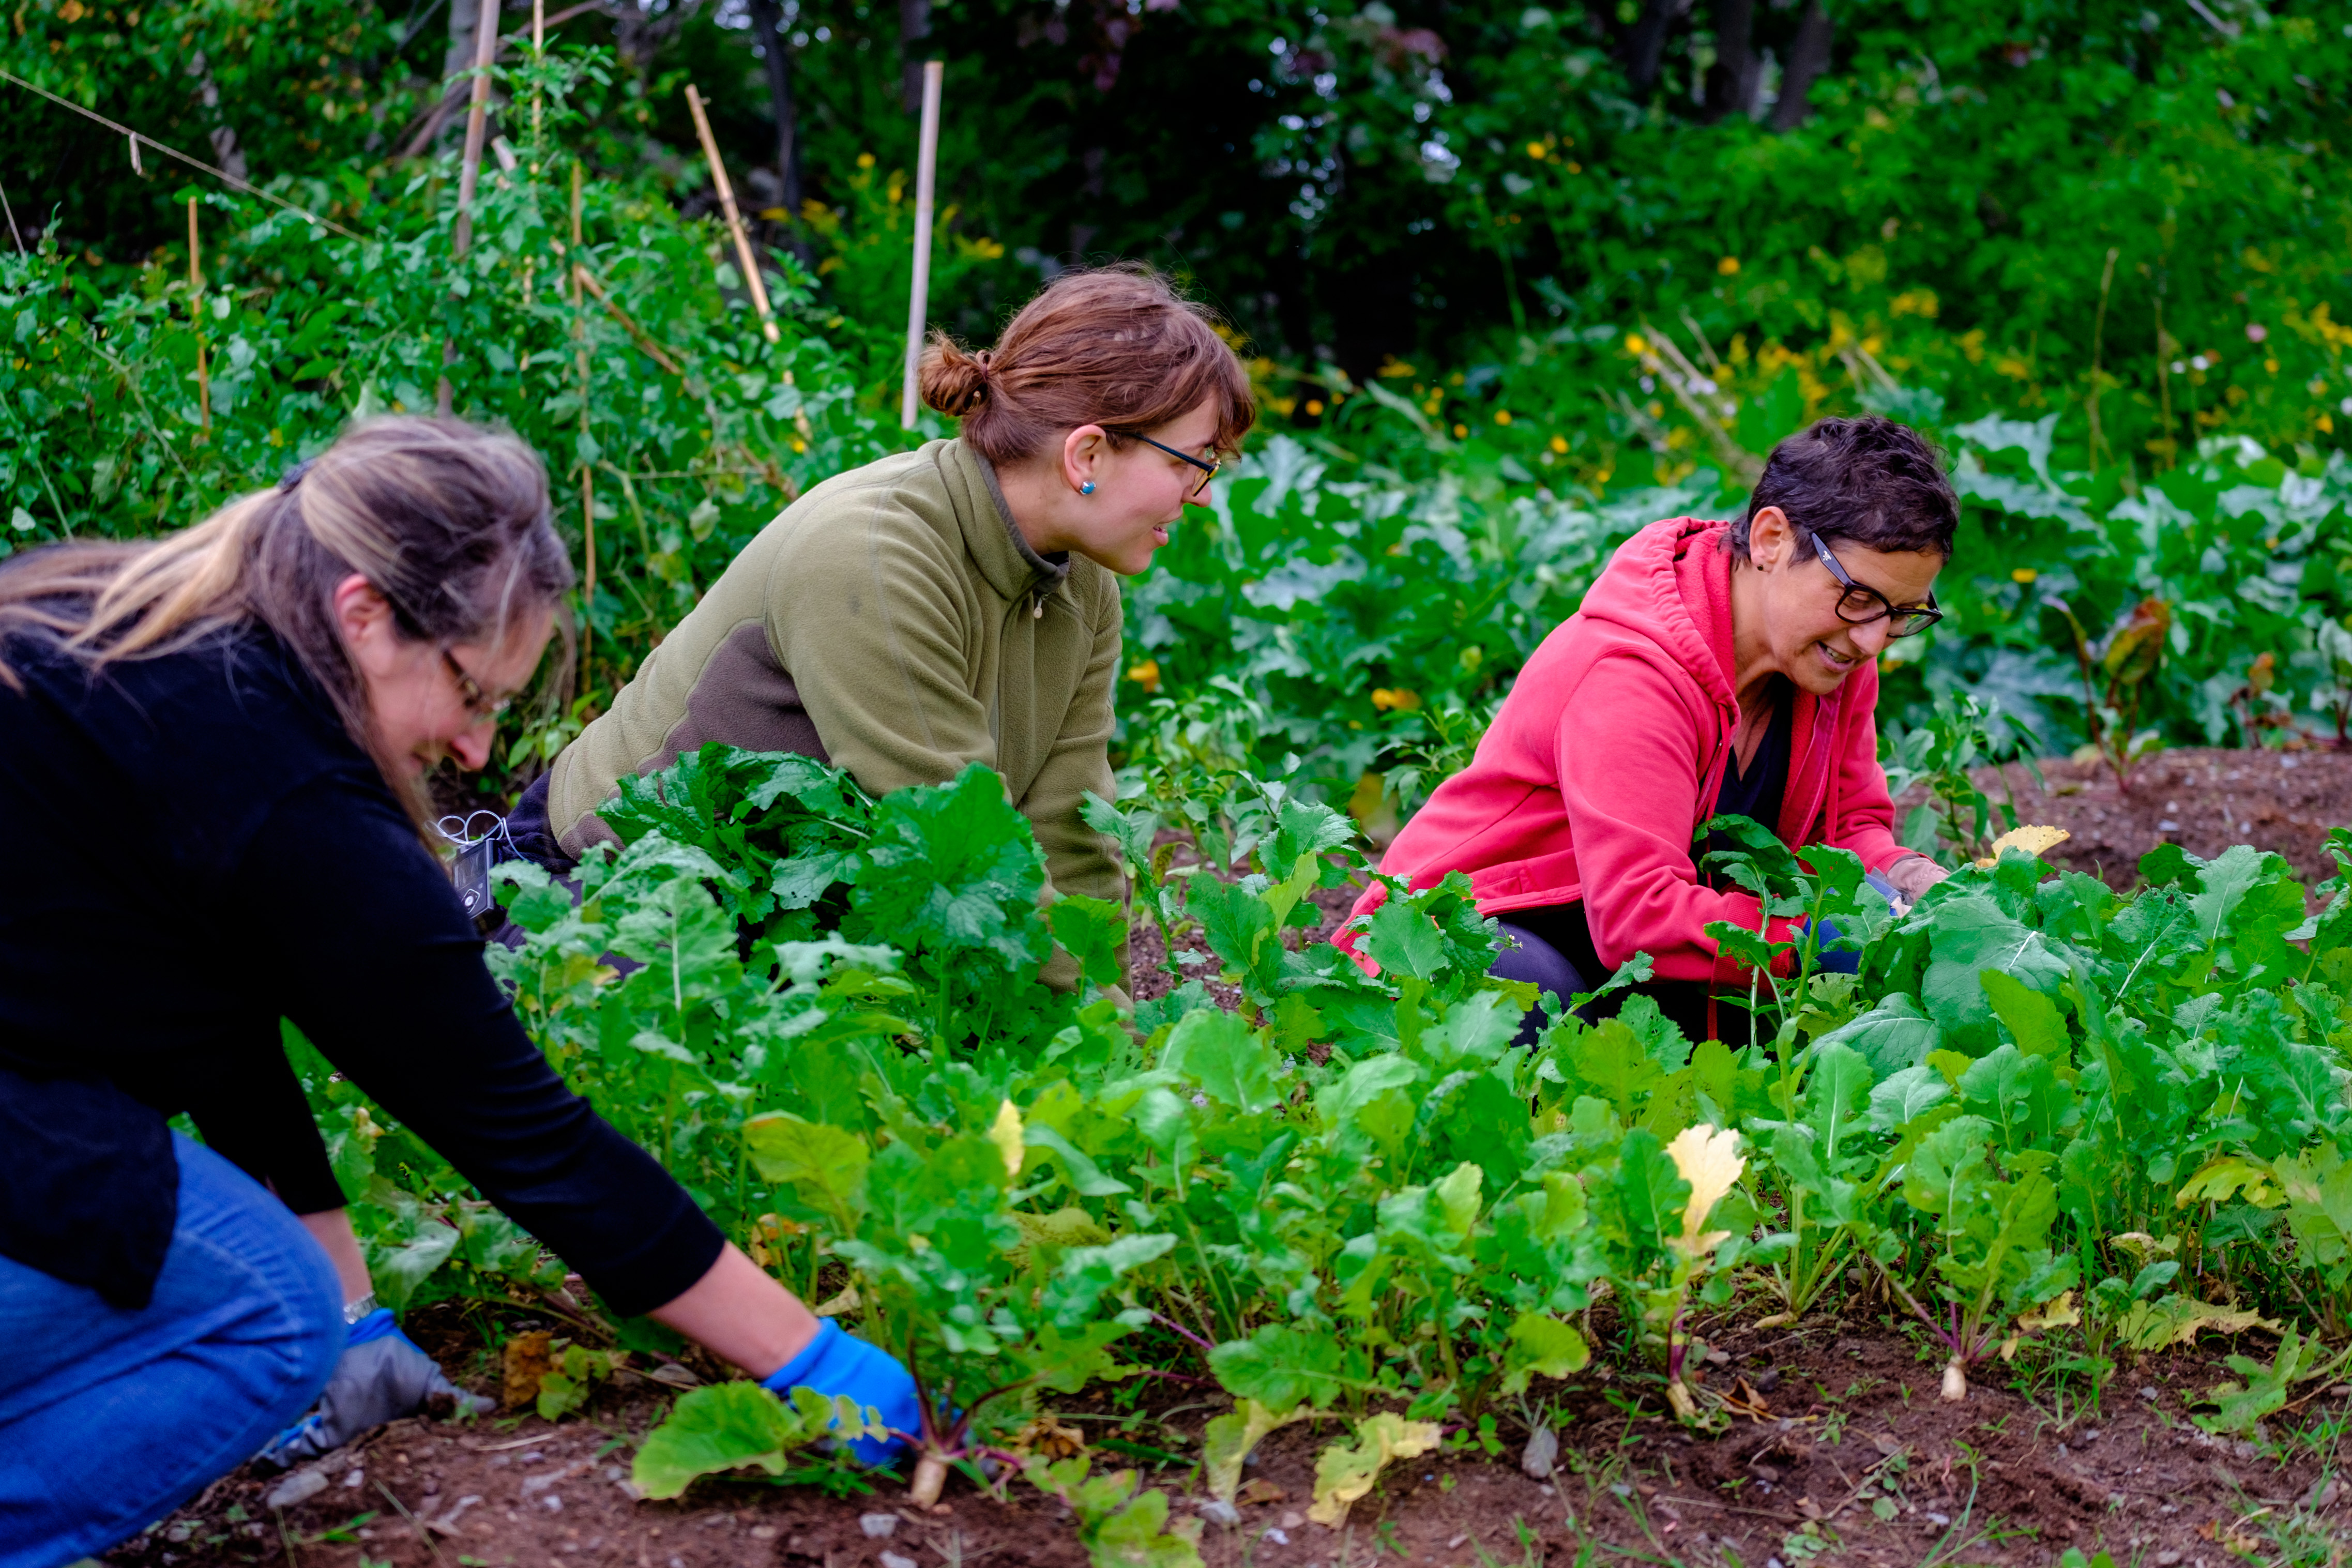 Three women working in a garden